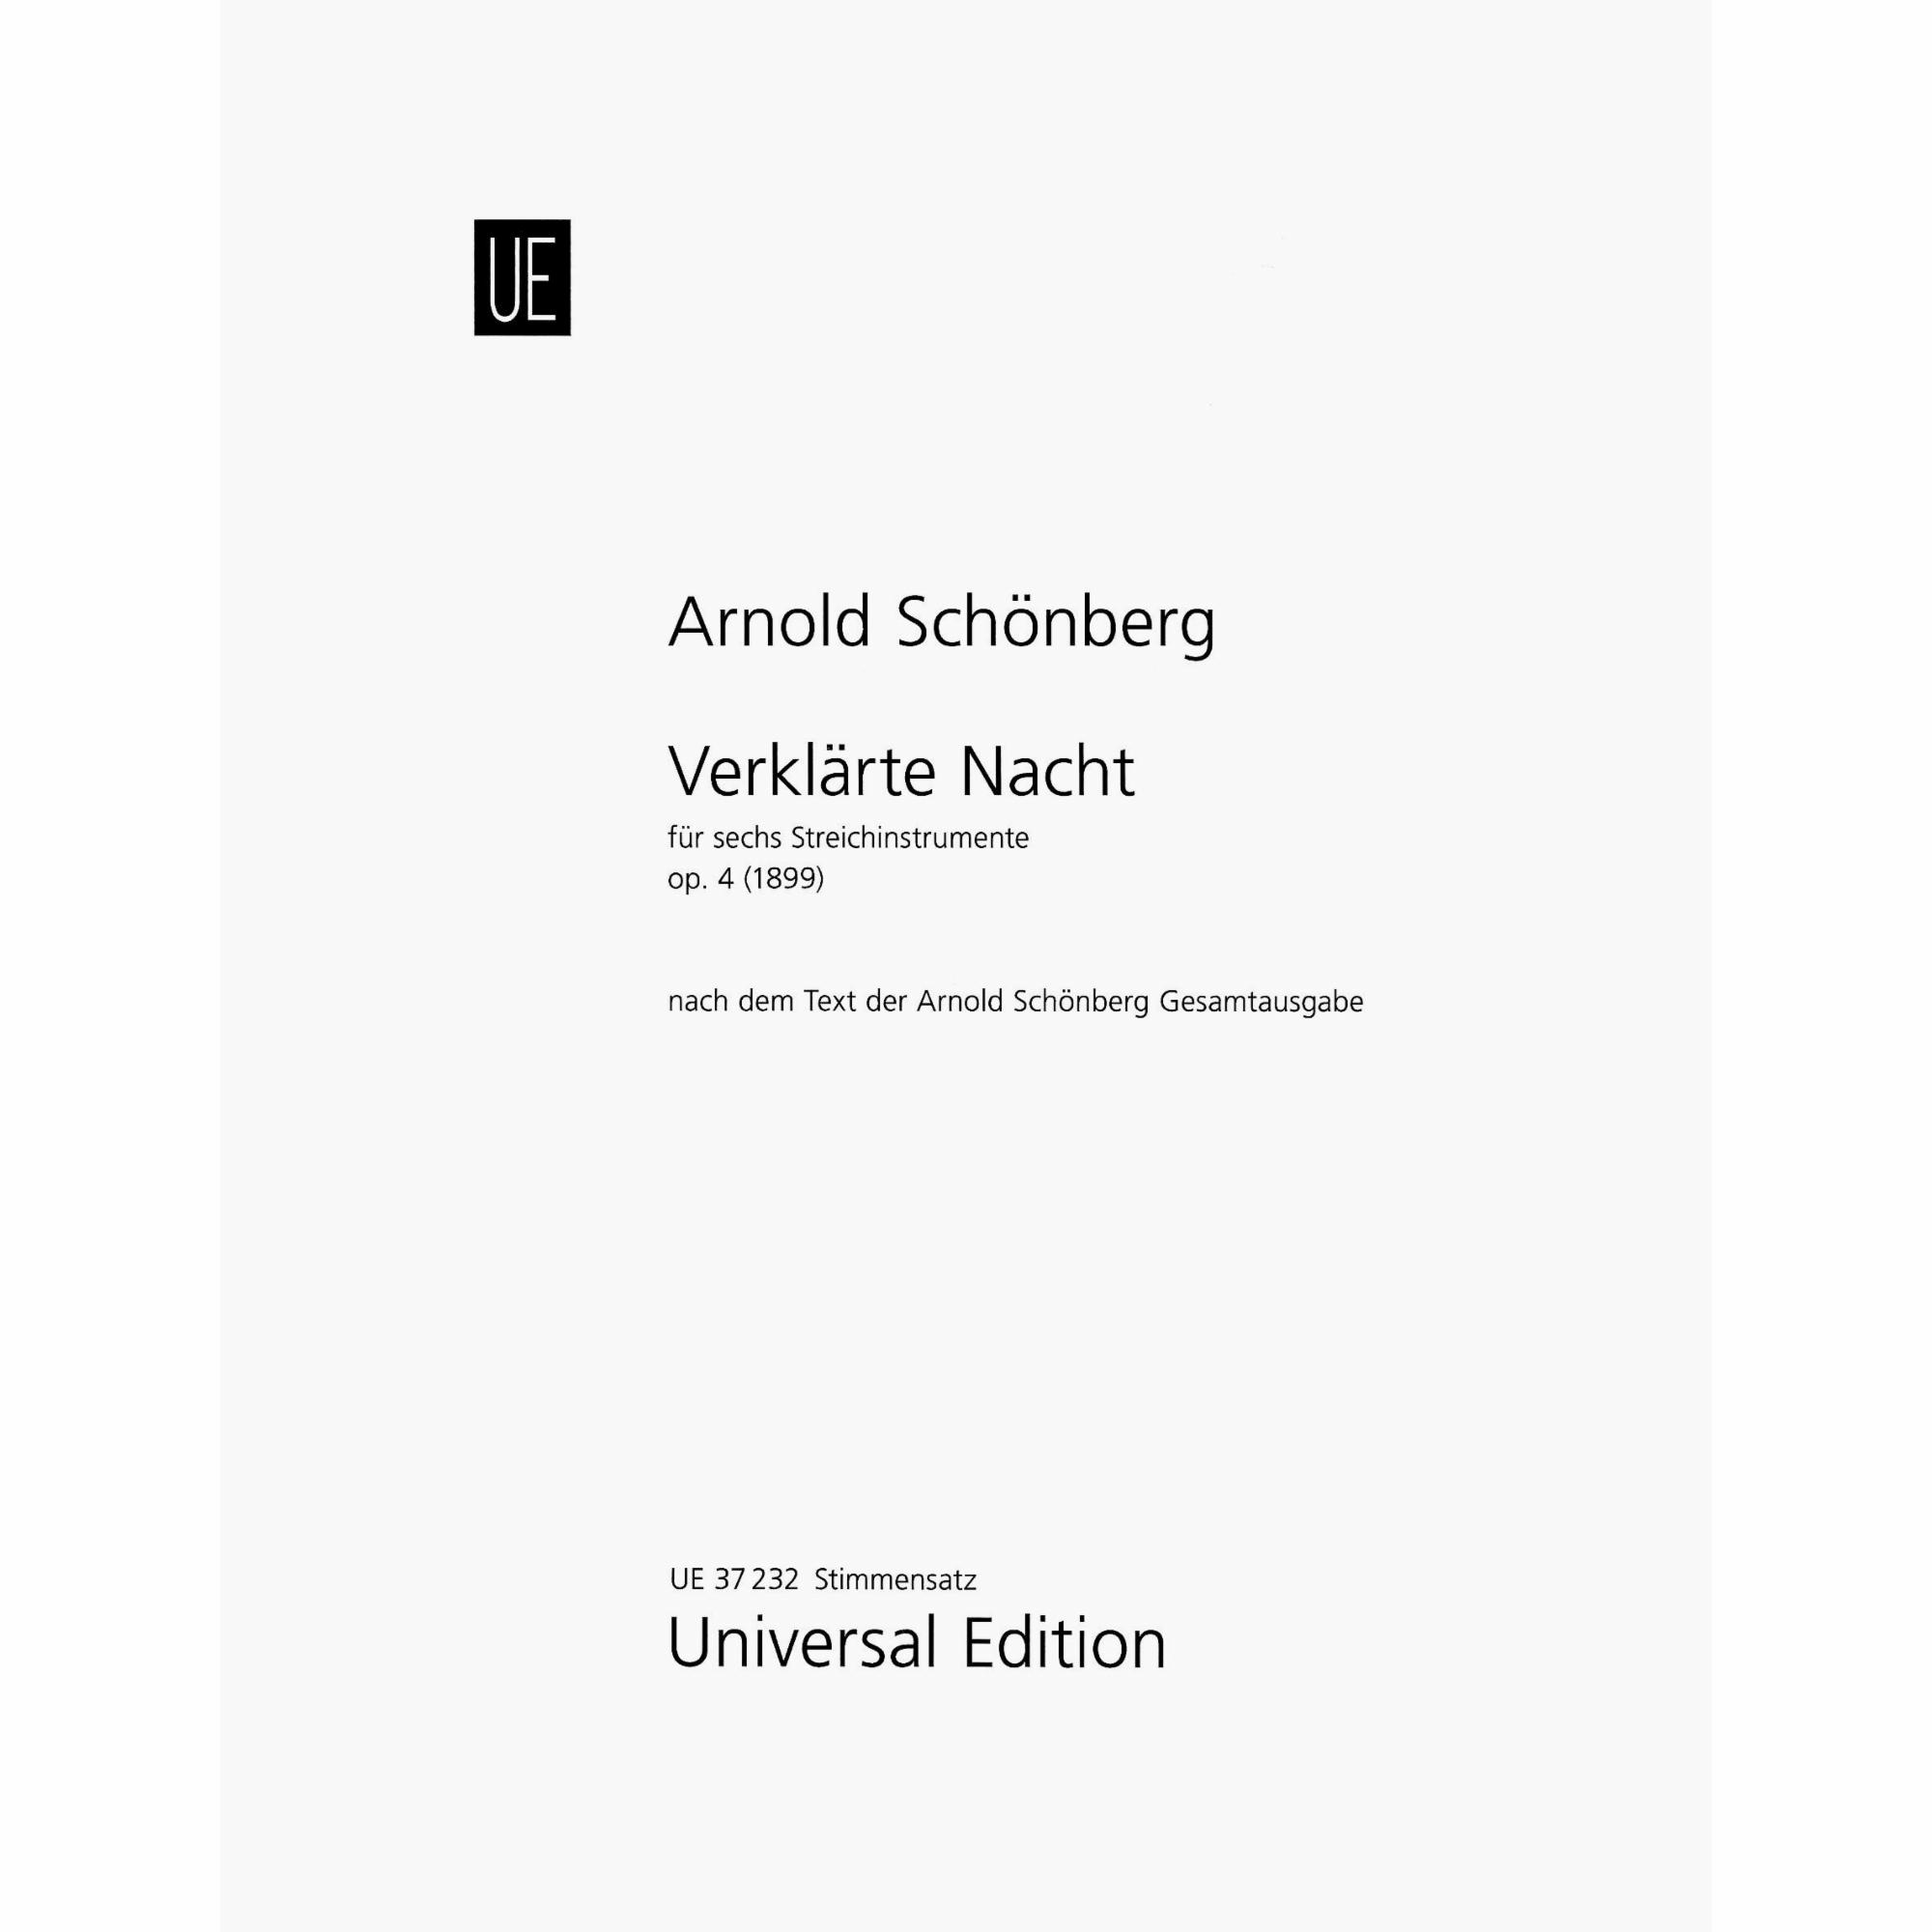 Schoenberg -- Verklarte Nacht, Op. 4 for String Sextet